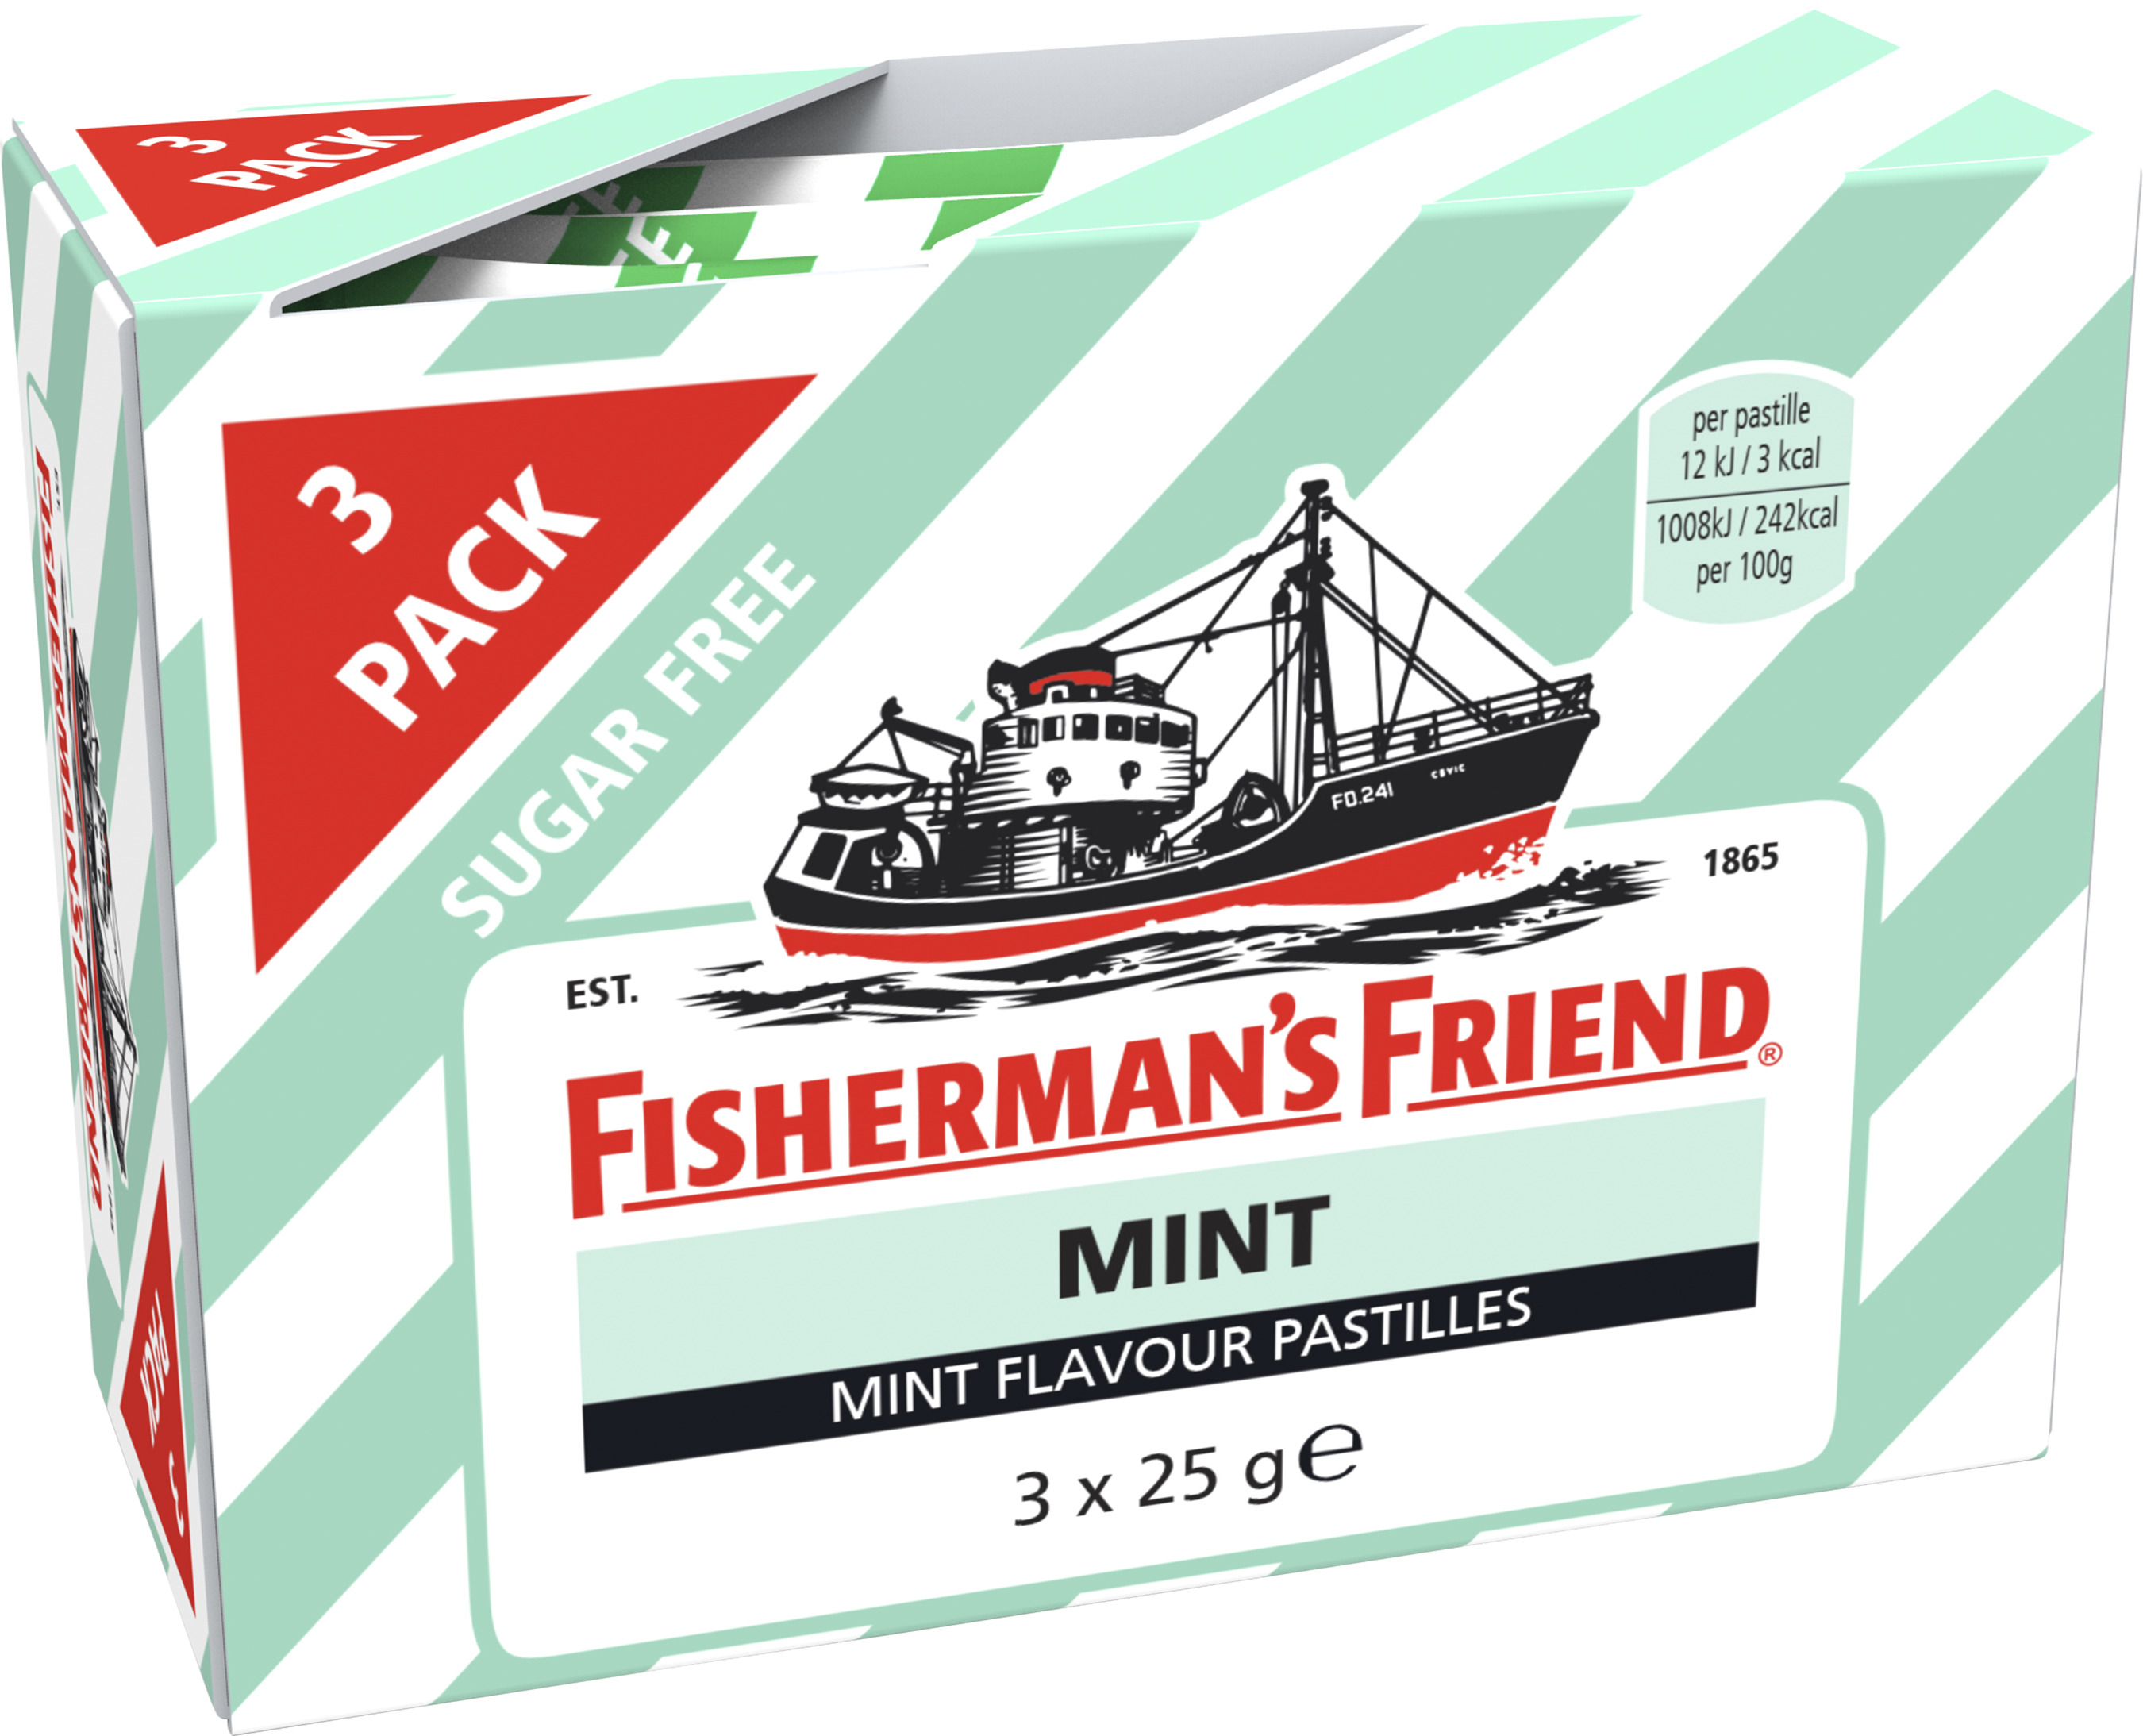 Fisherman's Friend Mint 3 x 25 g